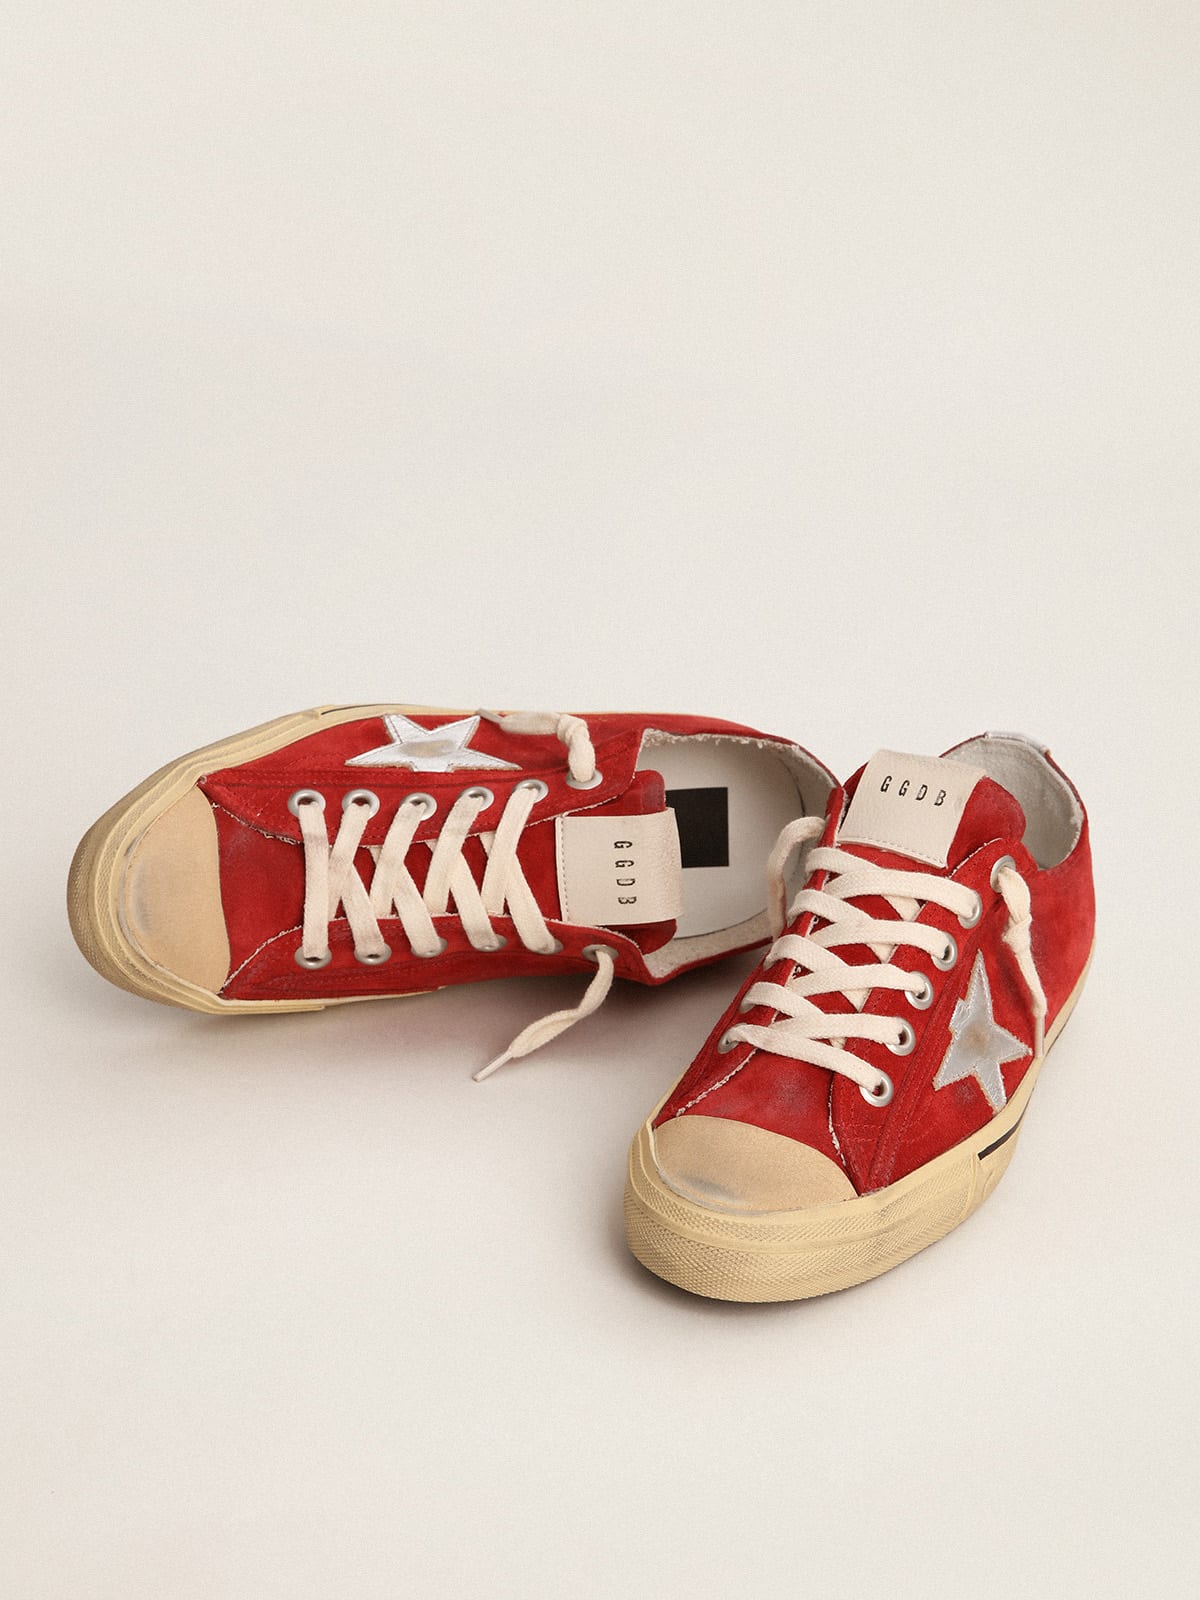 Golden Goose - Sneaker V-Star LTD in suede color rosso scuro con stella e talloncino in pelle laminata color argento in 